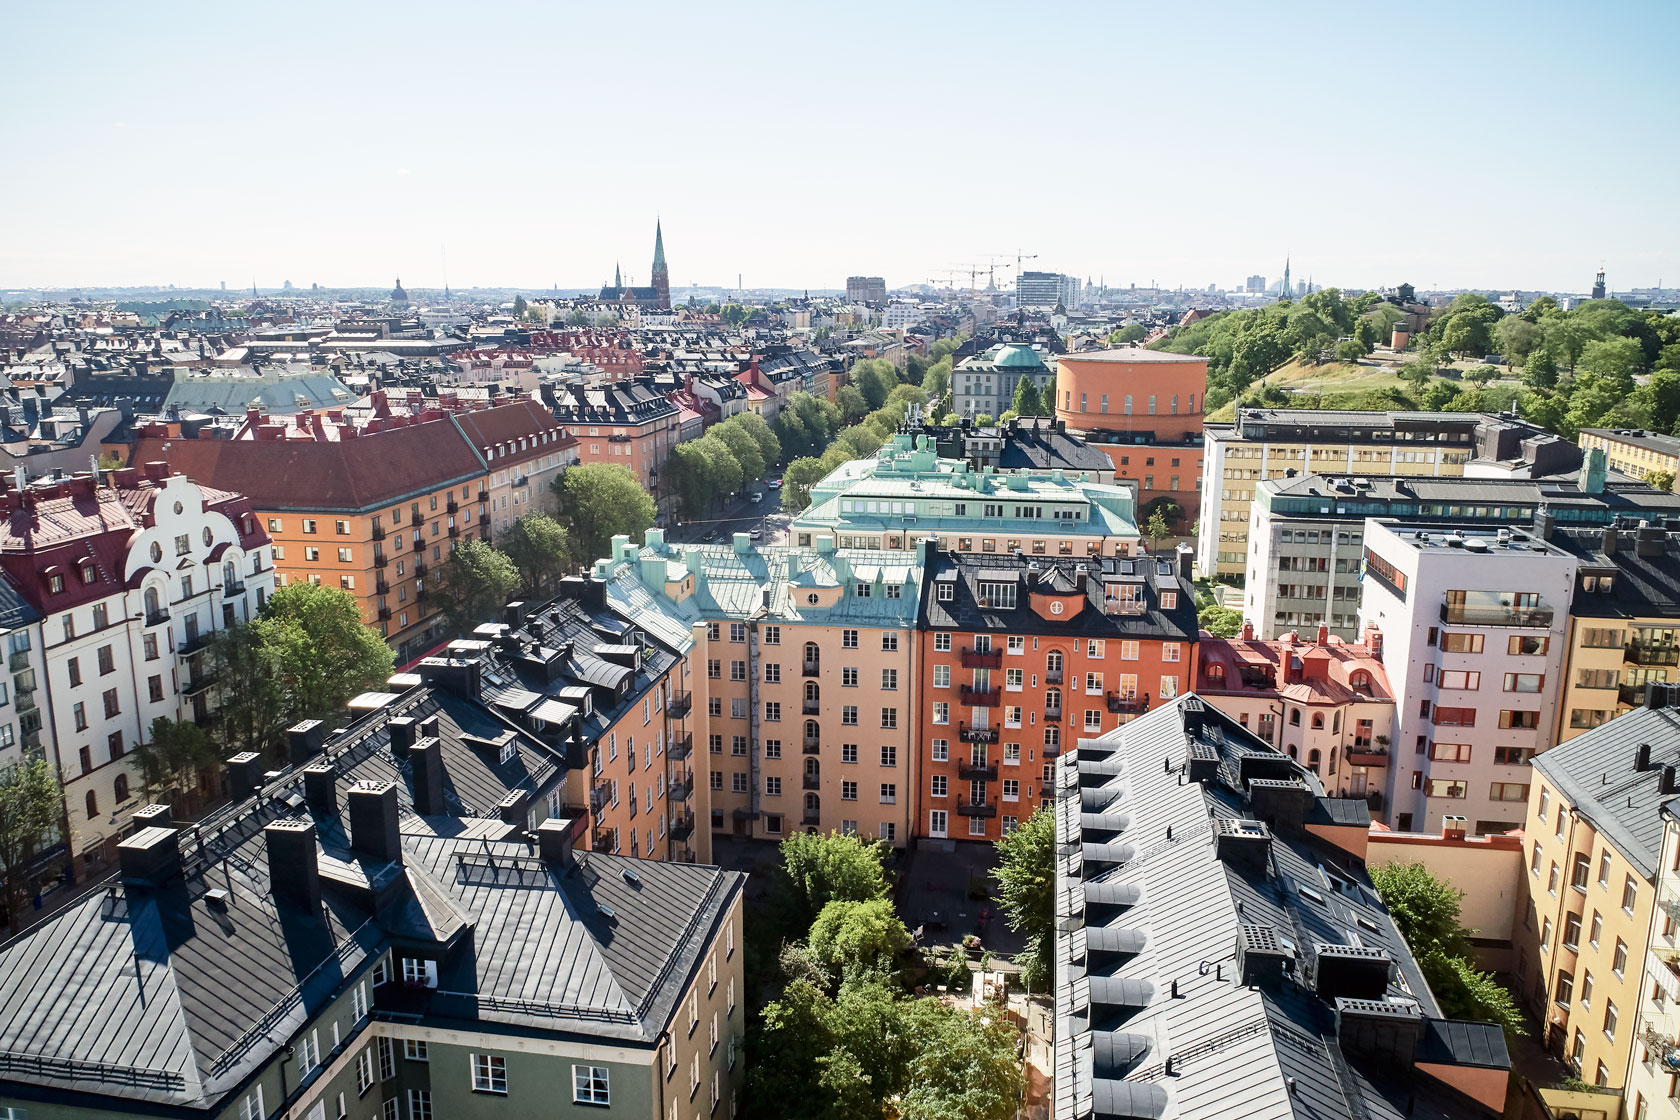 Multistory buildings in Stockholm